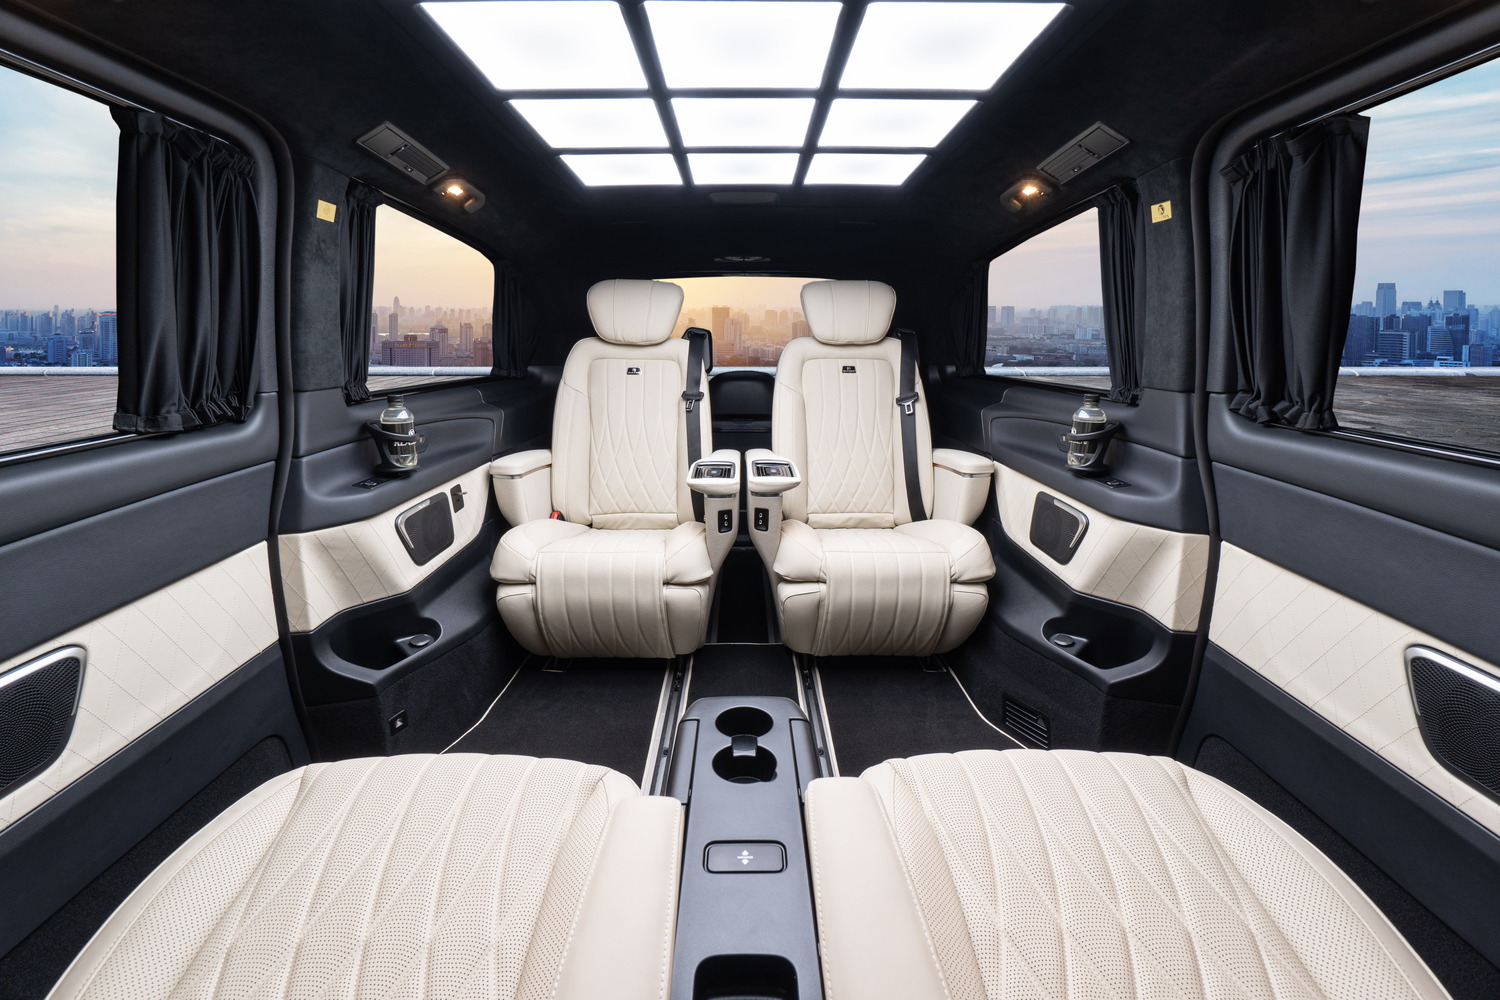 Mercedes-Benz V-Klasse - Ein Hingucker auf den ersten Blick. Mehr als nur ein Fahrzeug mit Funktion und schöner Ausstattung. Hier erwartet Sie die Erste Klasse in Sachen Interior Design.